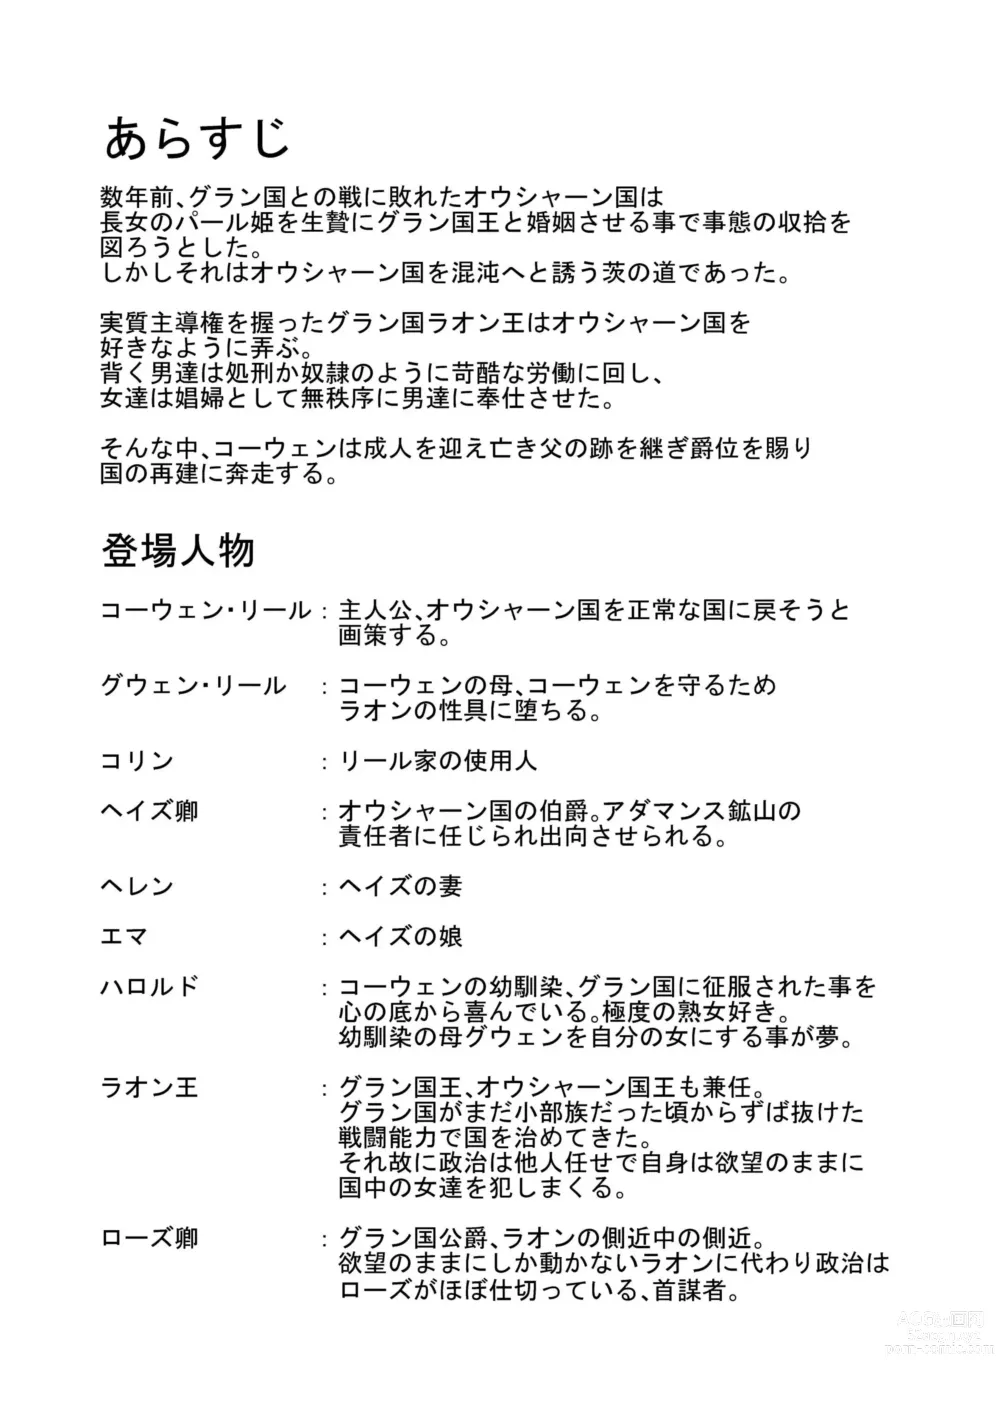 Page 4 of doujinshi Kyouki no Oukoku San no Shou